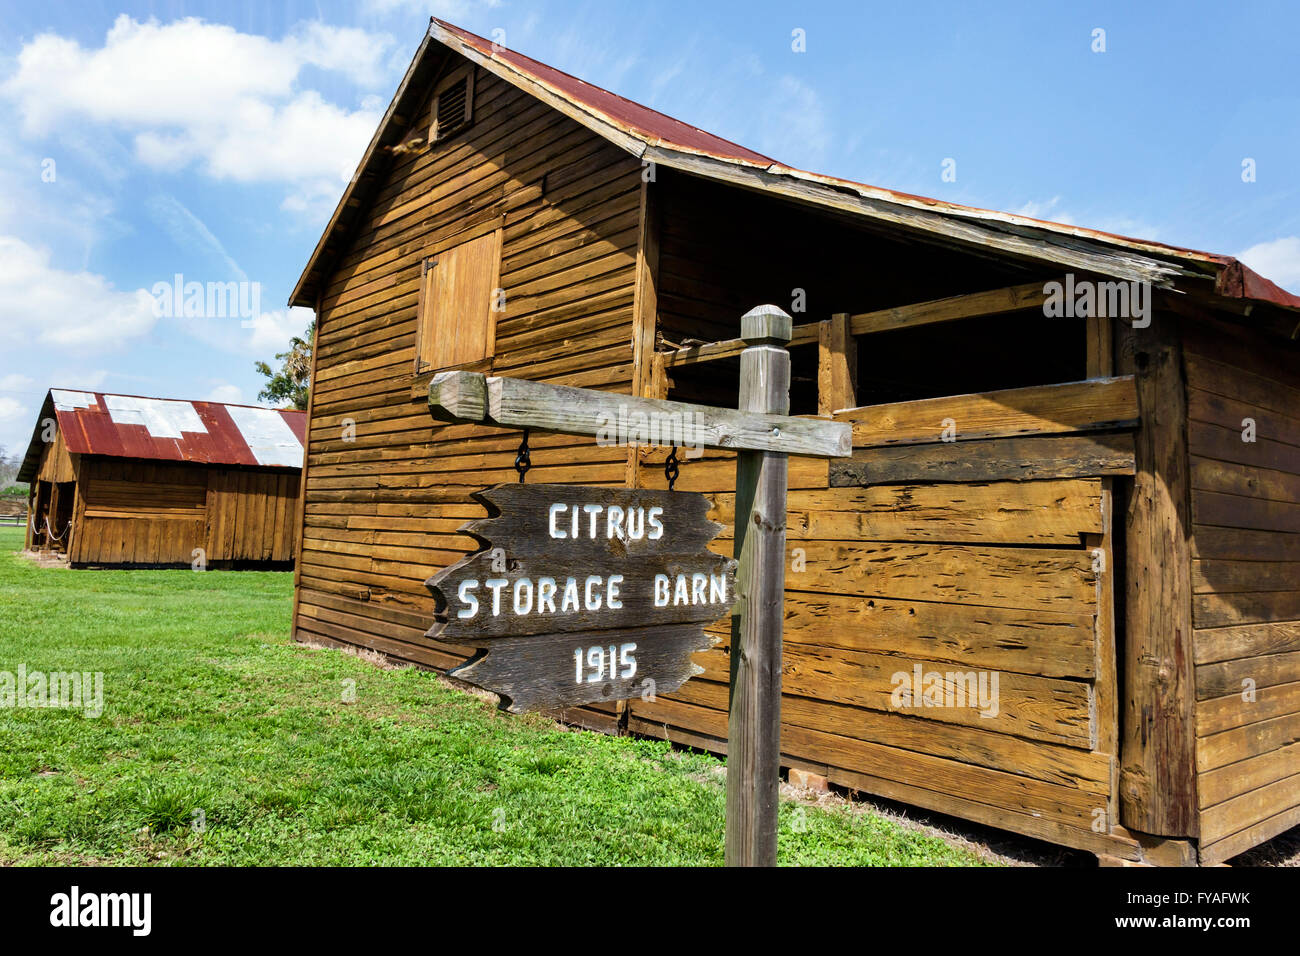 Orlando Florida, Pioneer Village à Shingle Creek, bâtiments historiques, Citrus Storage Barn, FL160402022 Banque D'Images